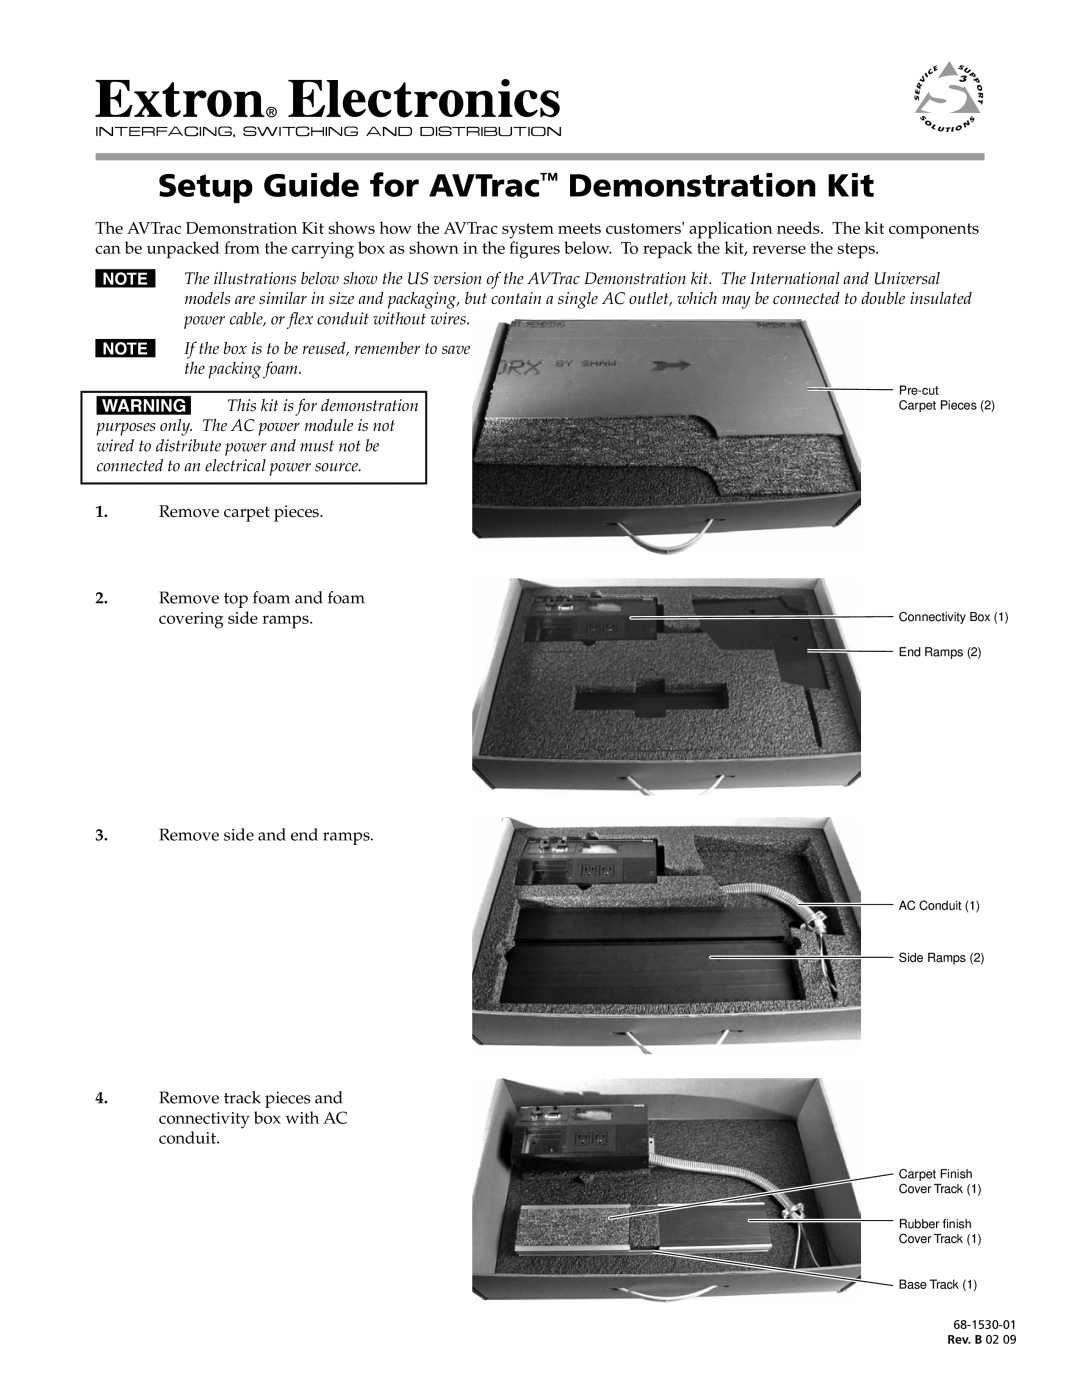 Extron electronic setup guide Setup Guide for AVTrac Demonstration Kit, Preliminary 